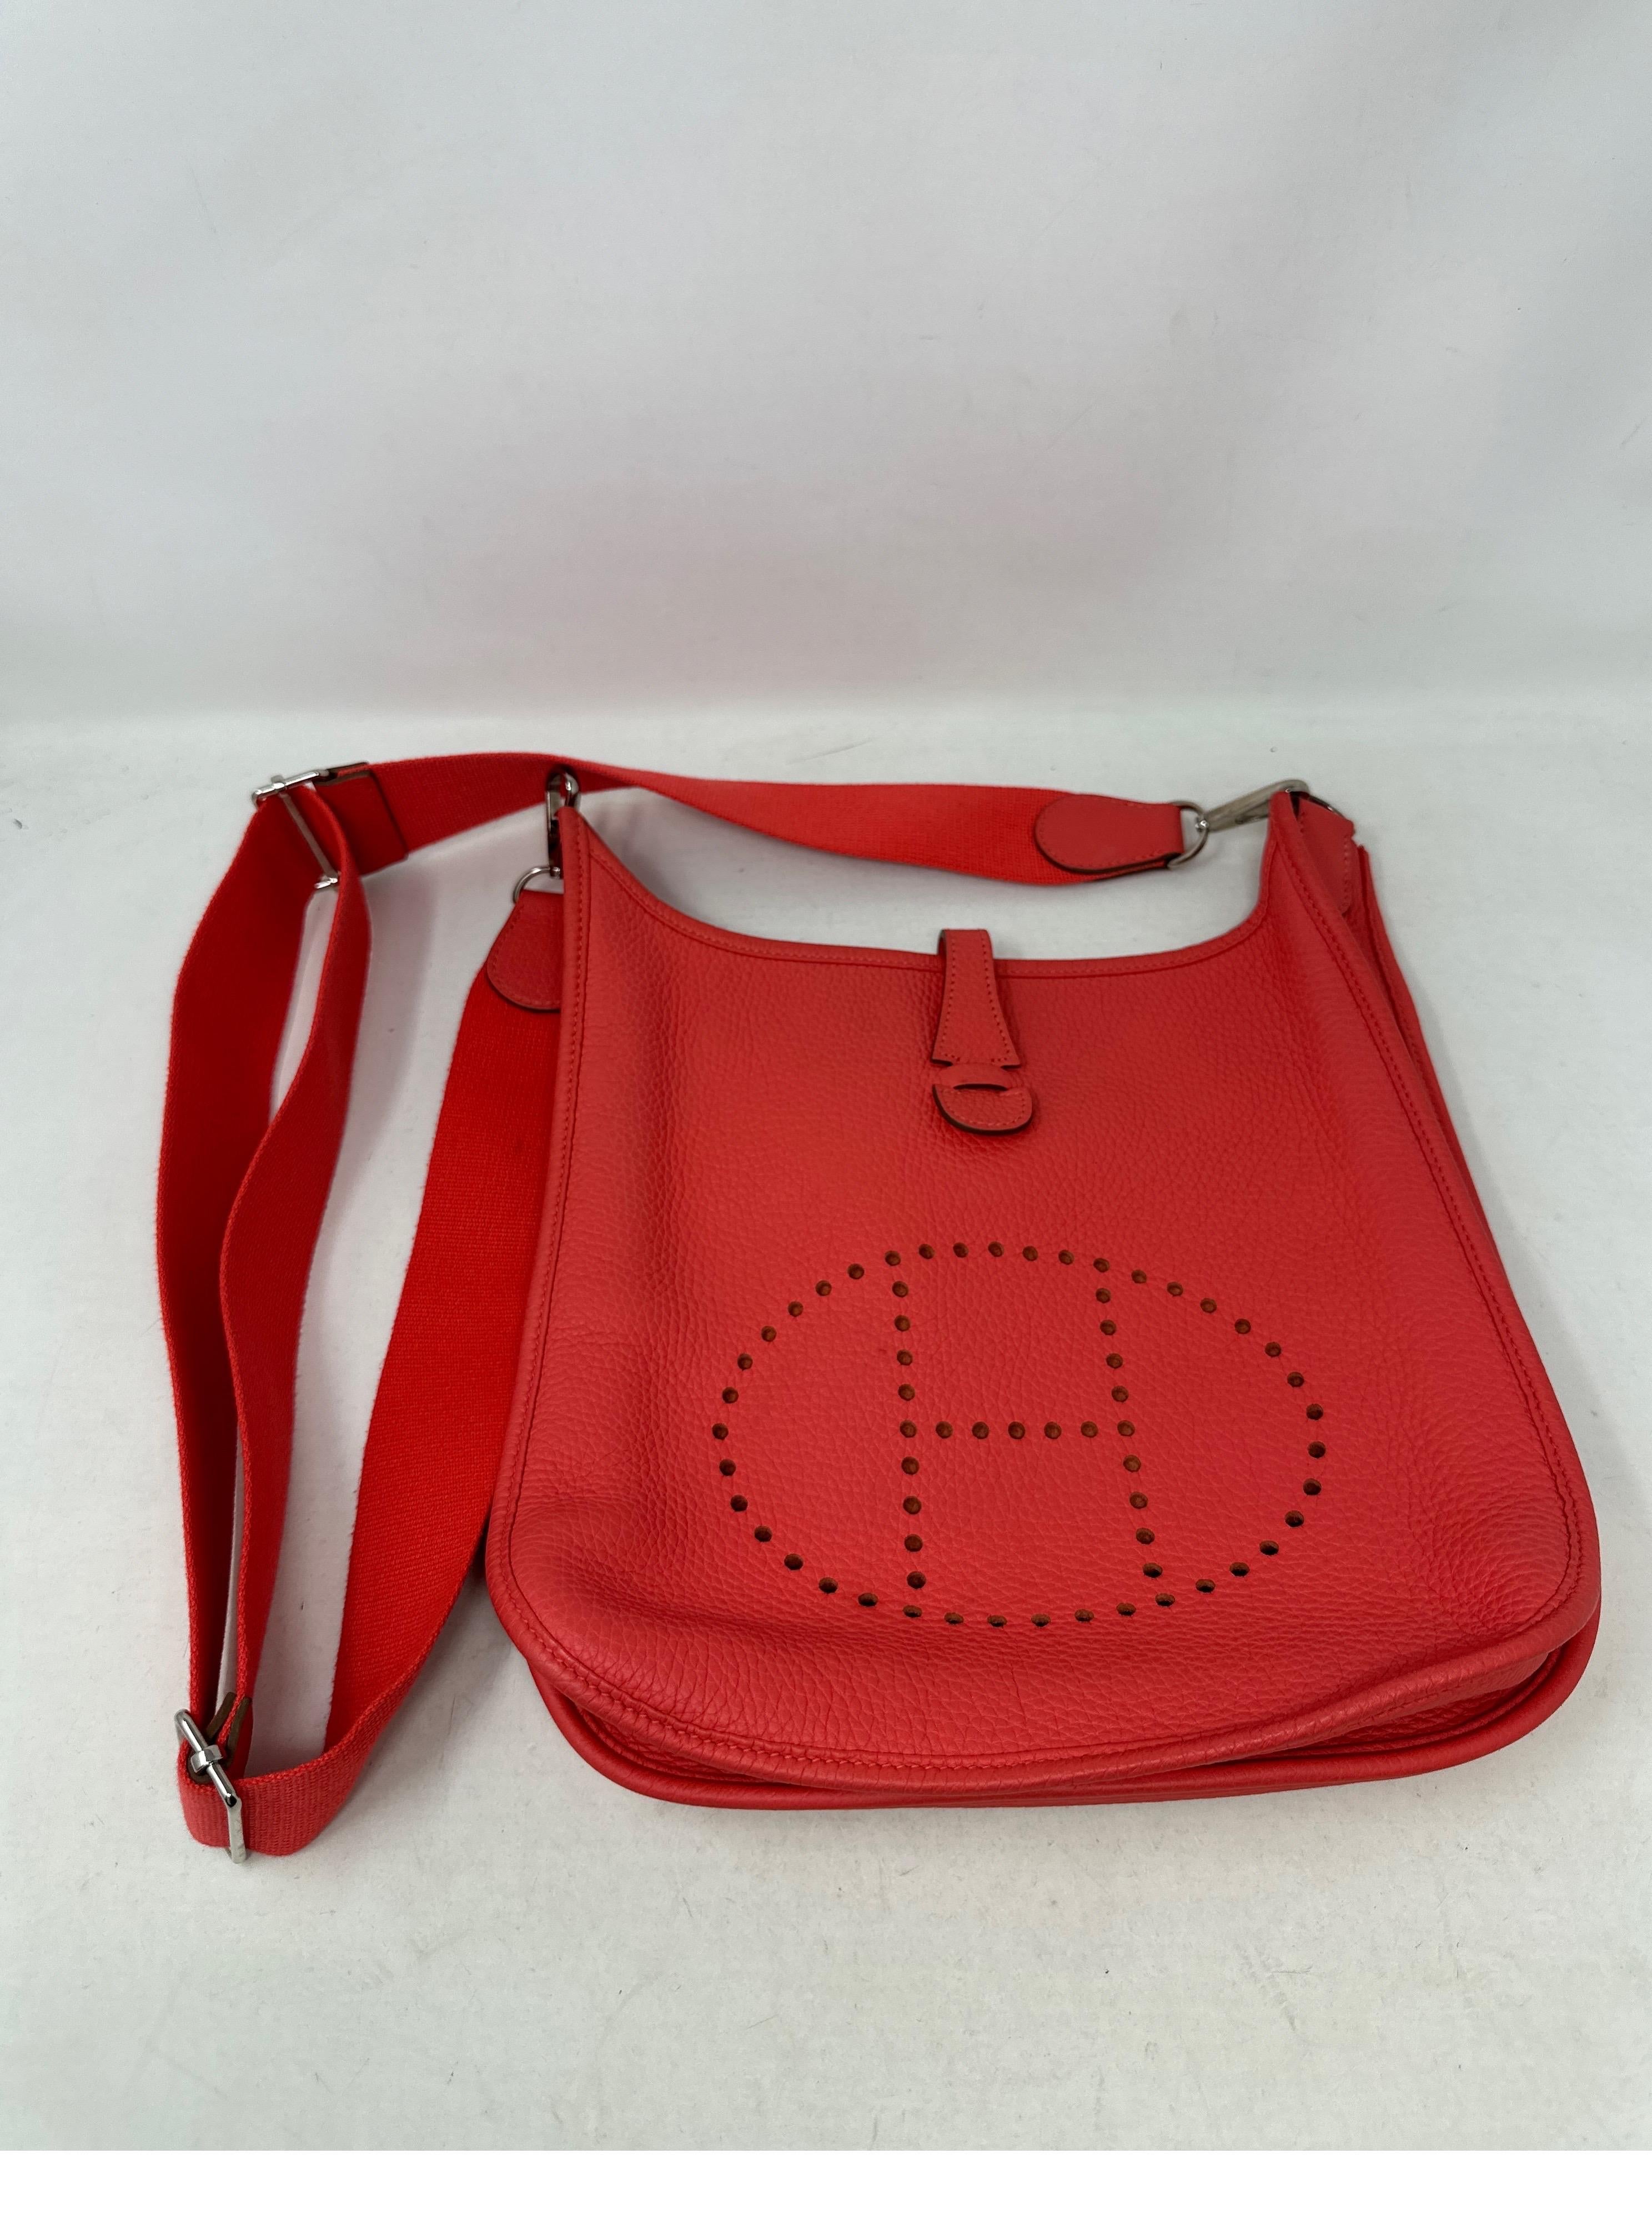 Red Hermes Rouge Pivoine Evelyne PM Bag 